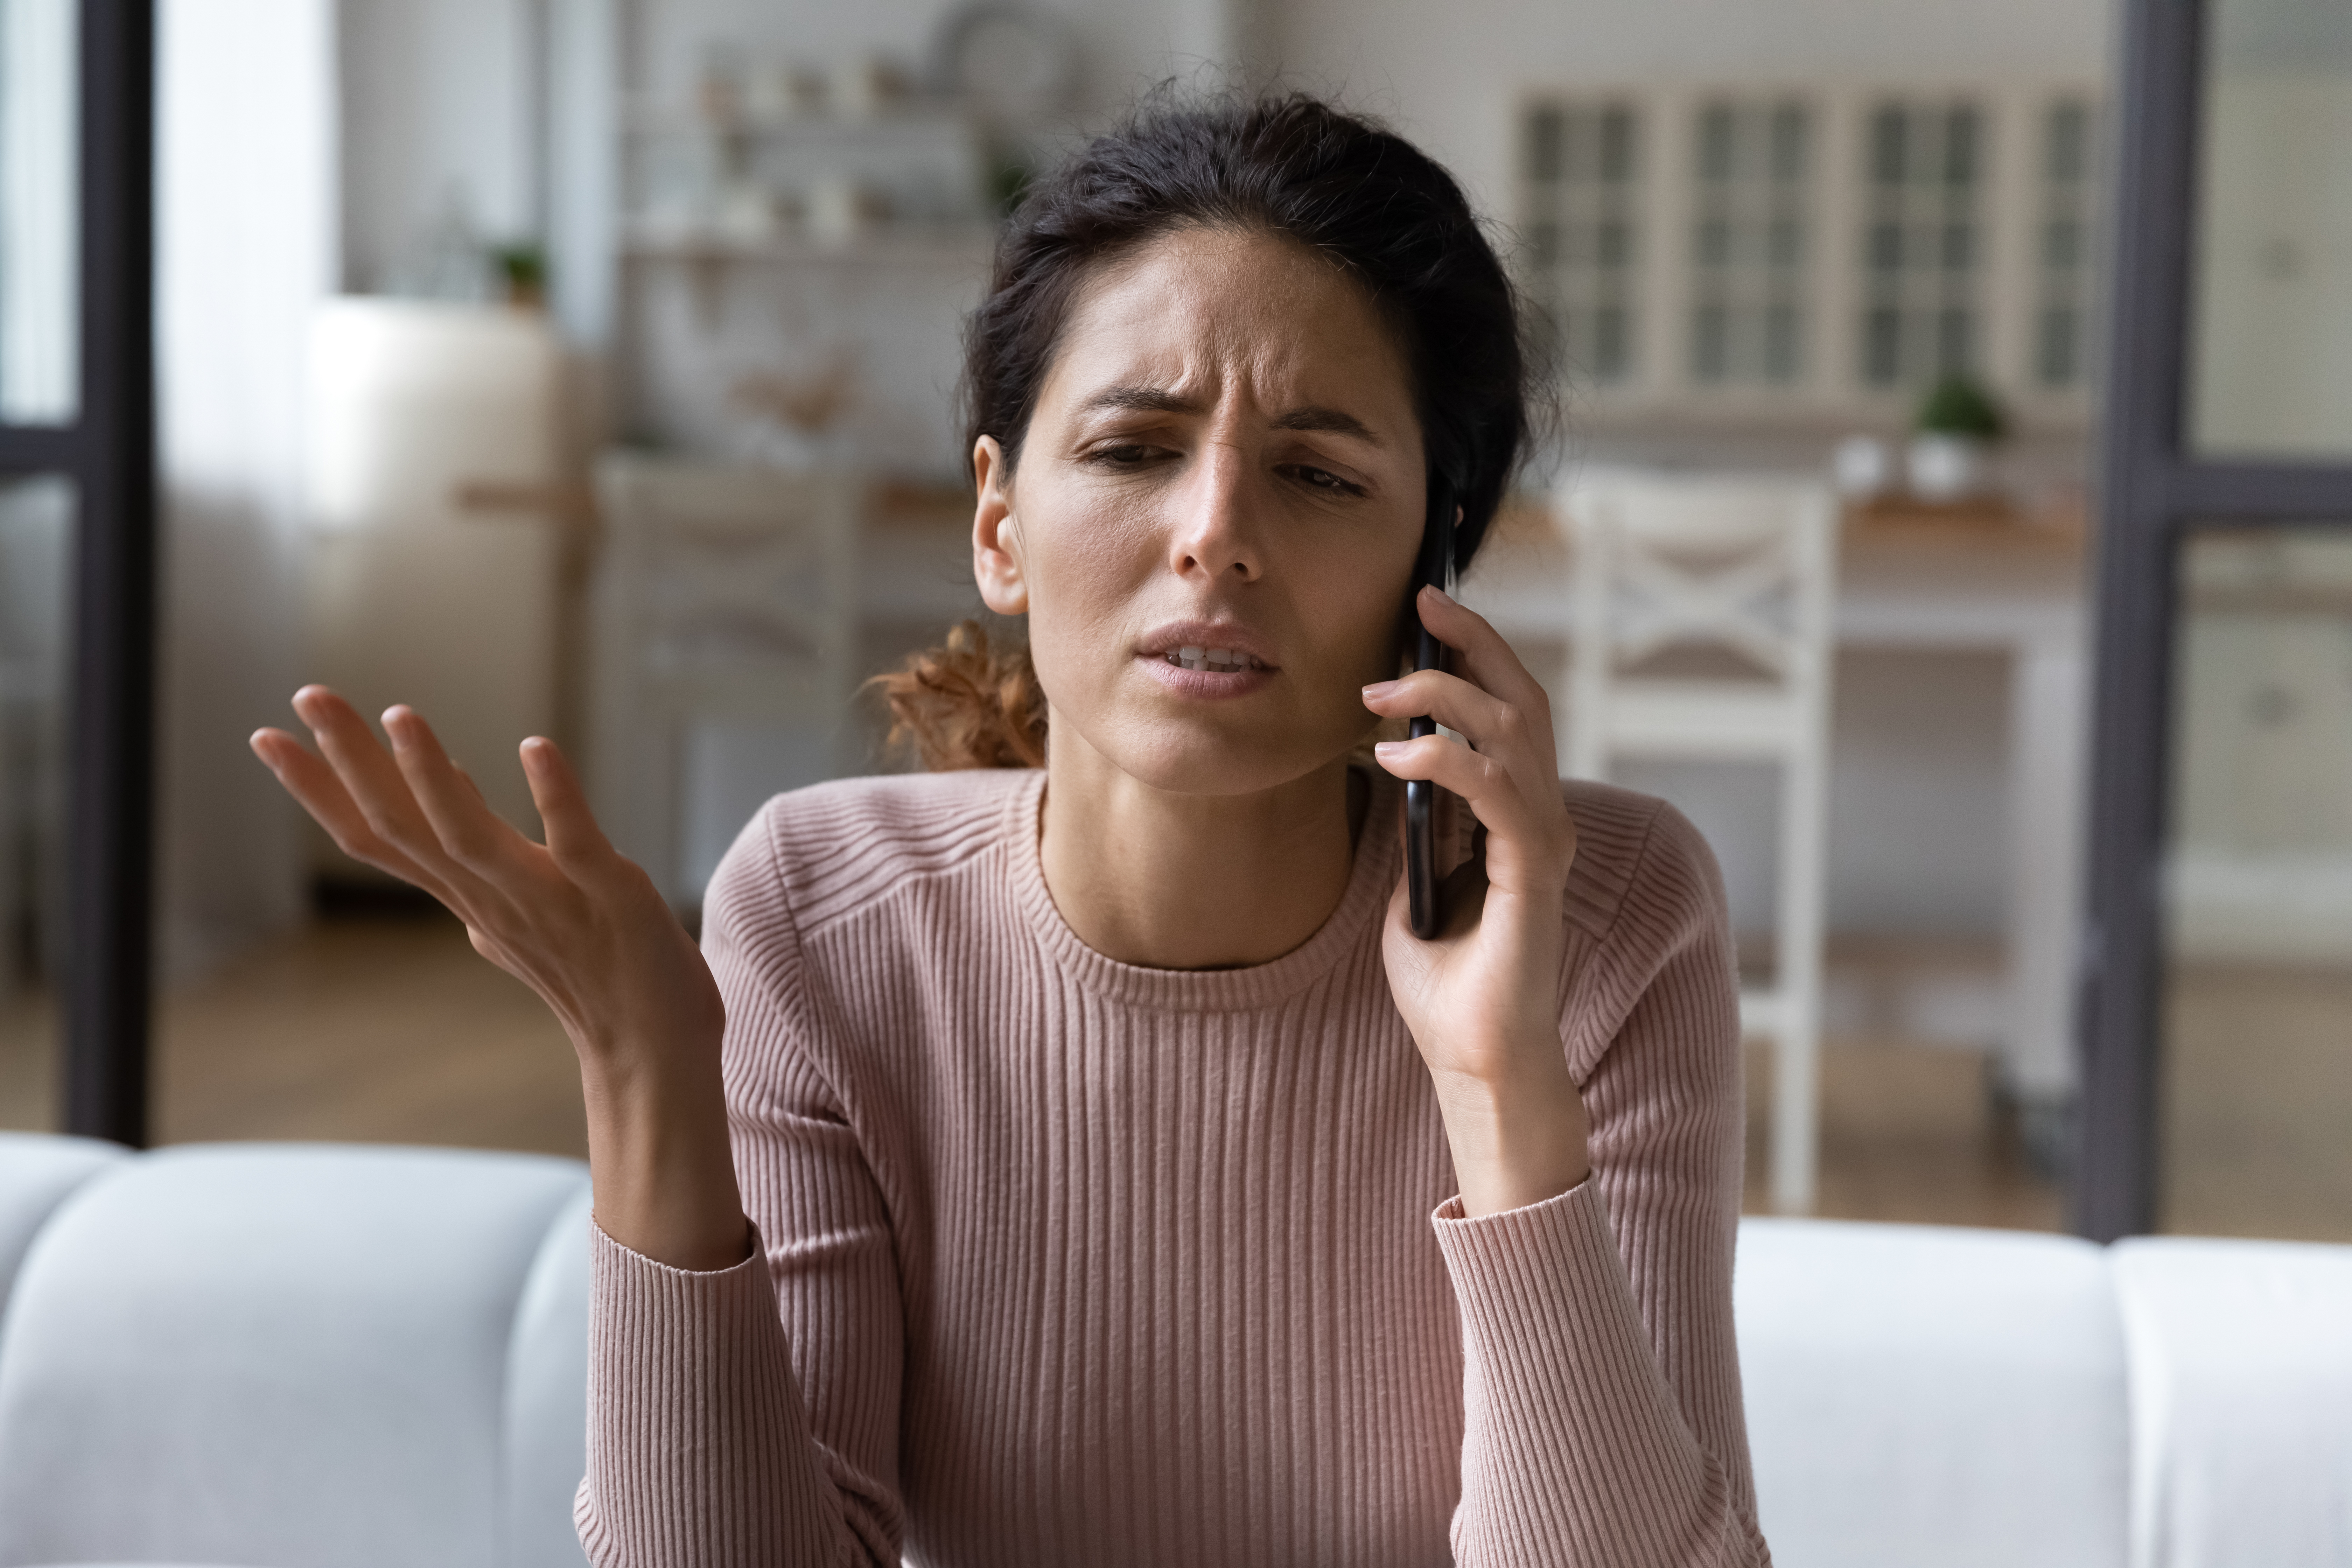 Femme contrariée parlant au téléphone | Source : Shutterstock